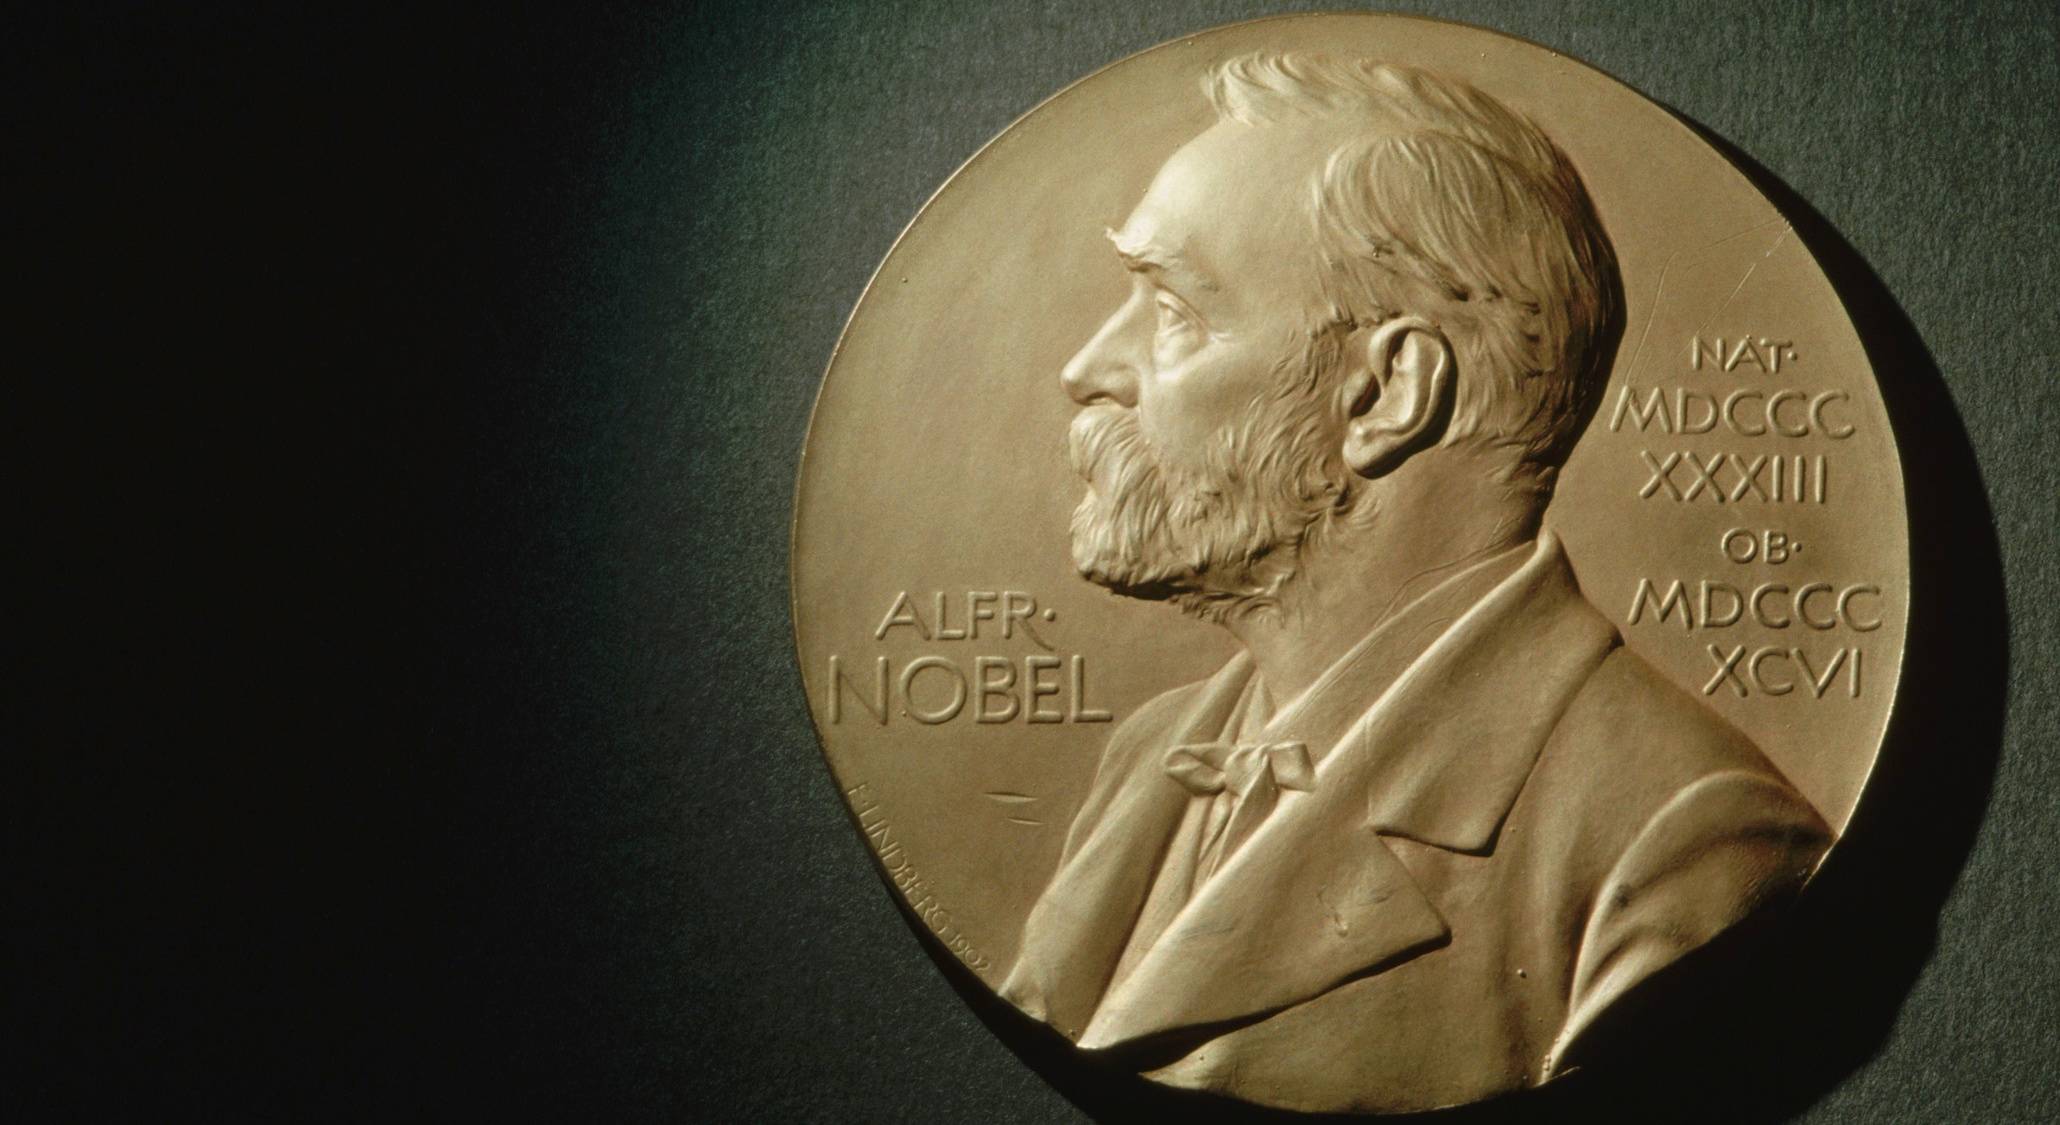  Названы лауреаты Нобелевской премии по физике - фото 1